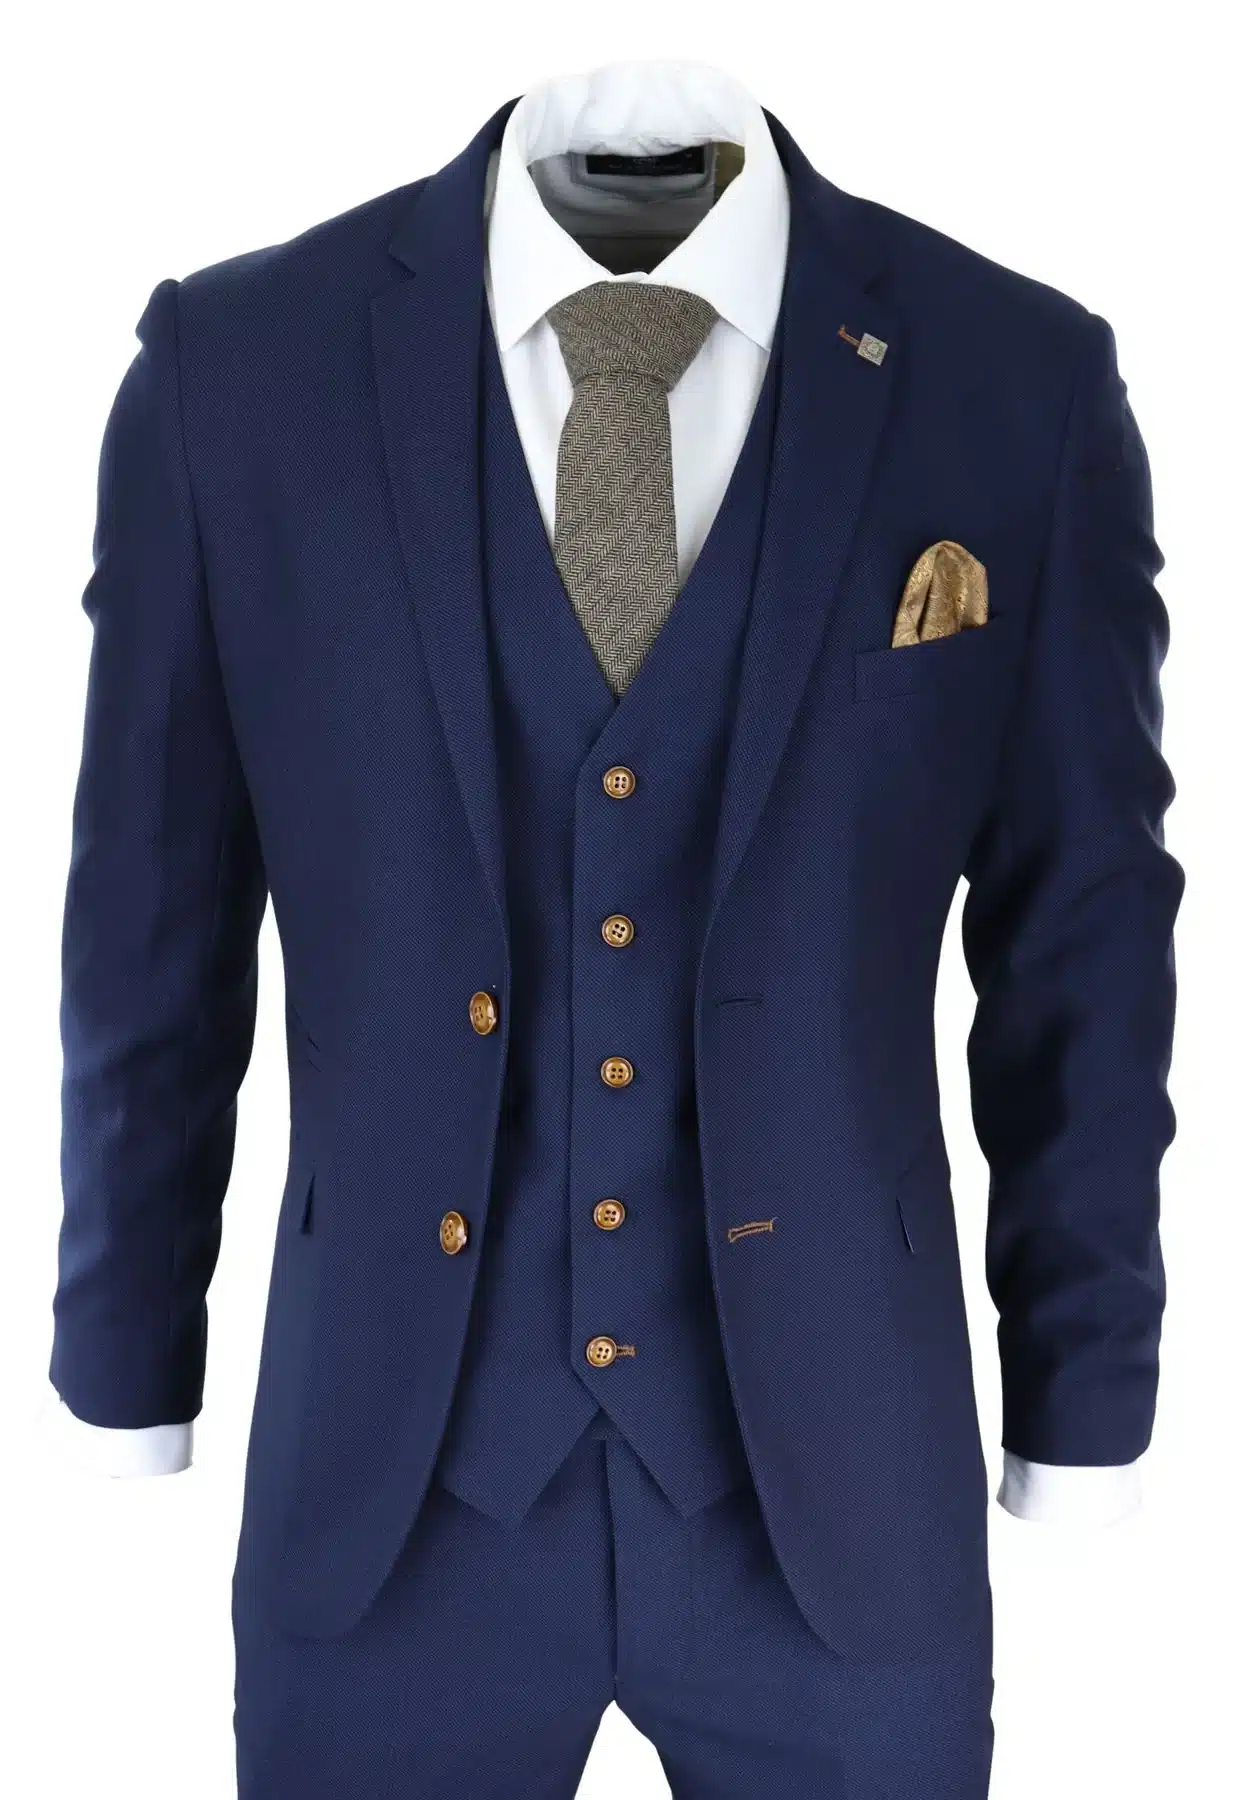 3 Piece Suits for Men - Buy Online - Happy Gentleman - United States US